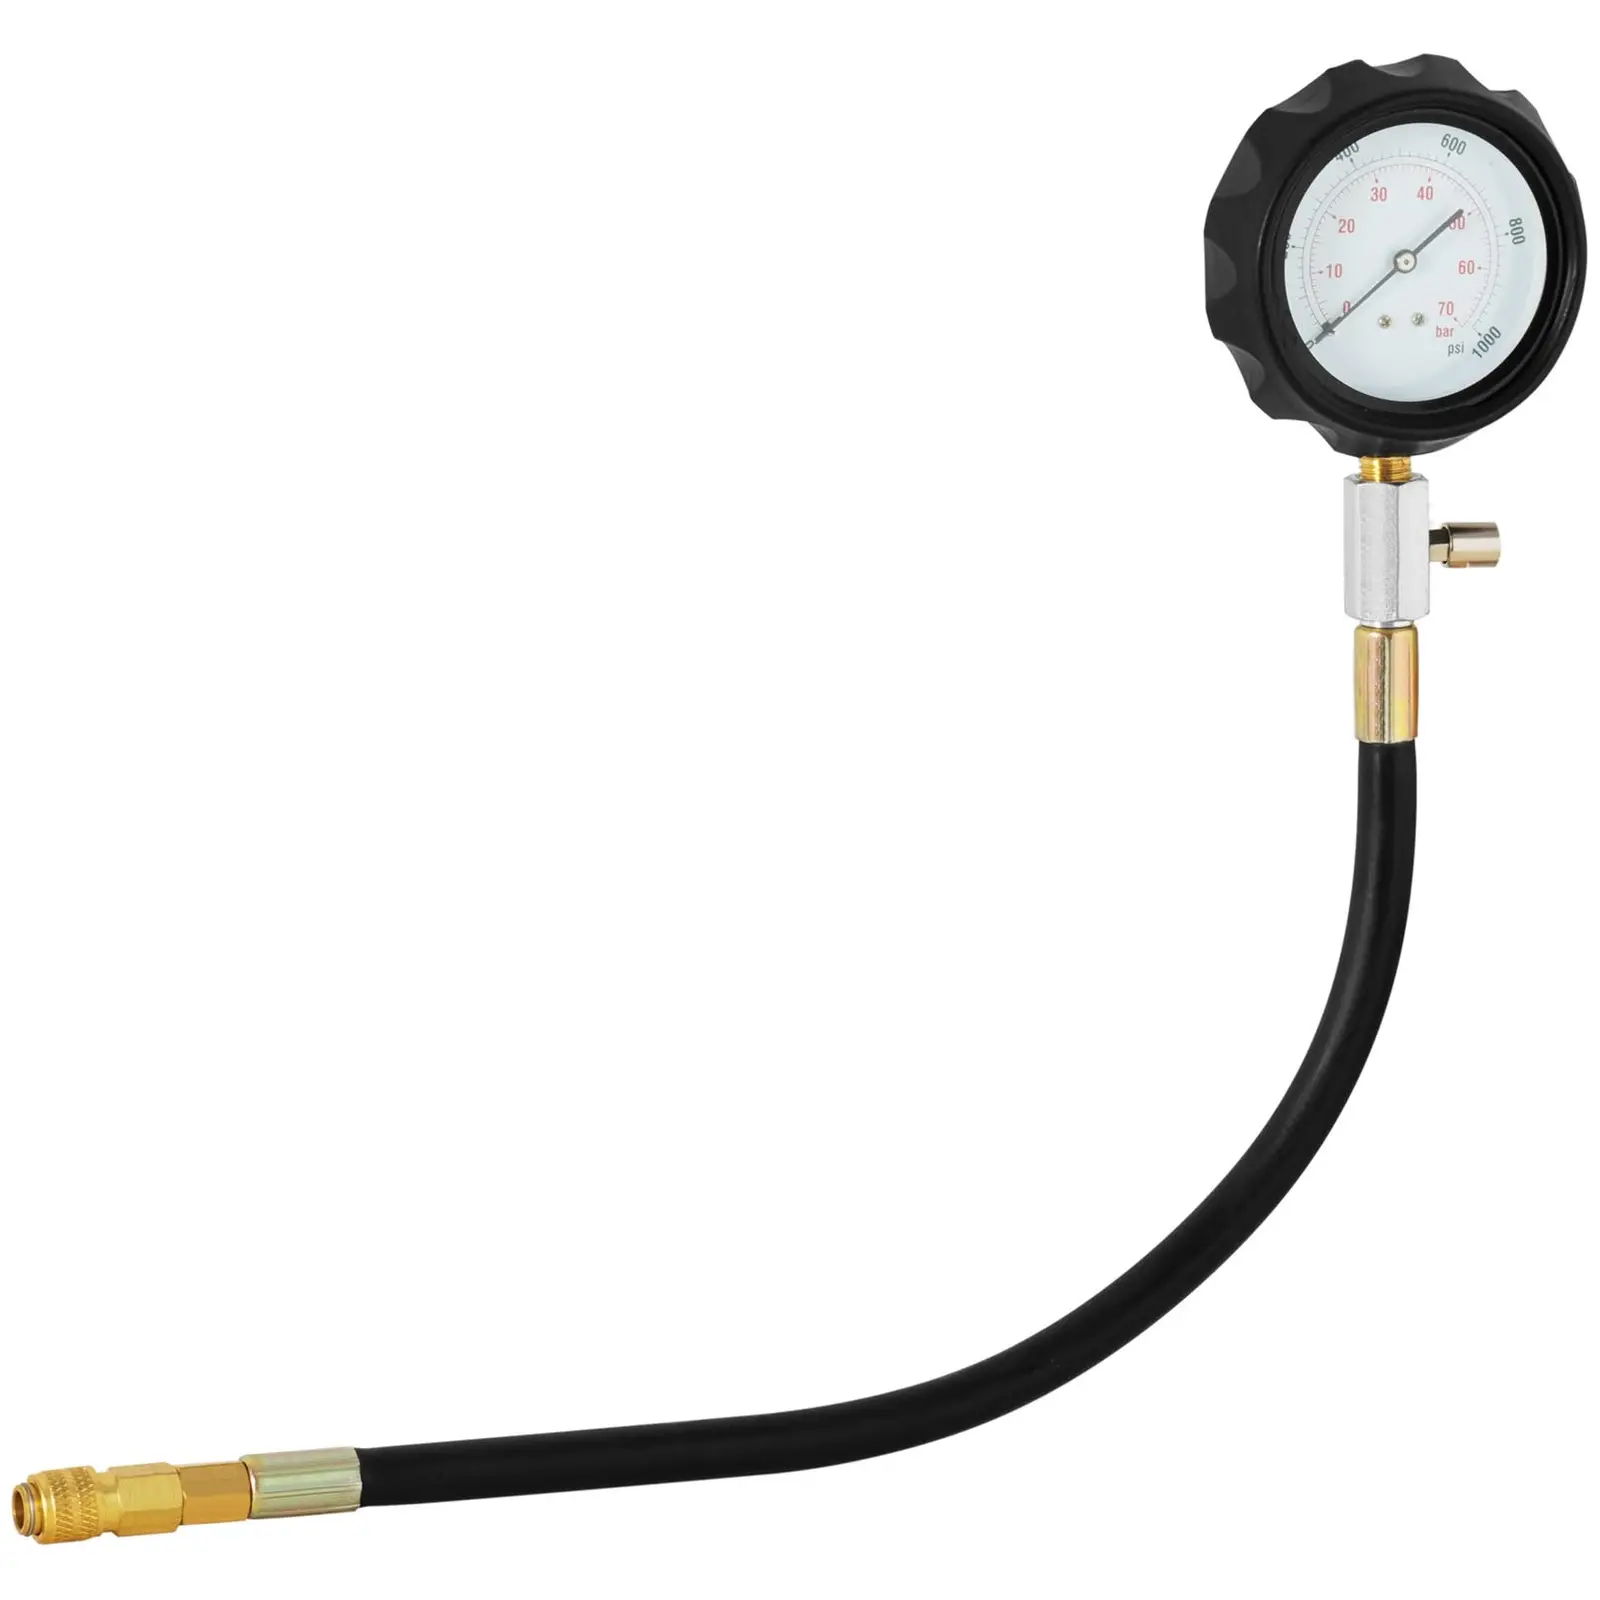 Tester tlaku - Diesel - 0 – 70 bar - 80 mm Manometer - hadica 35 cm